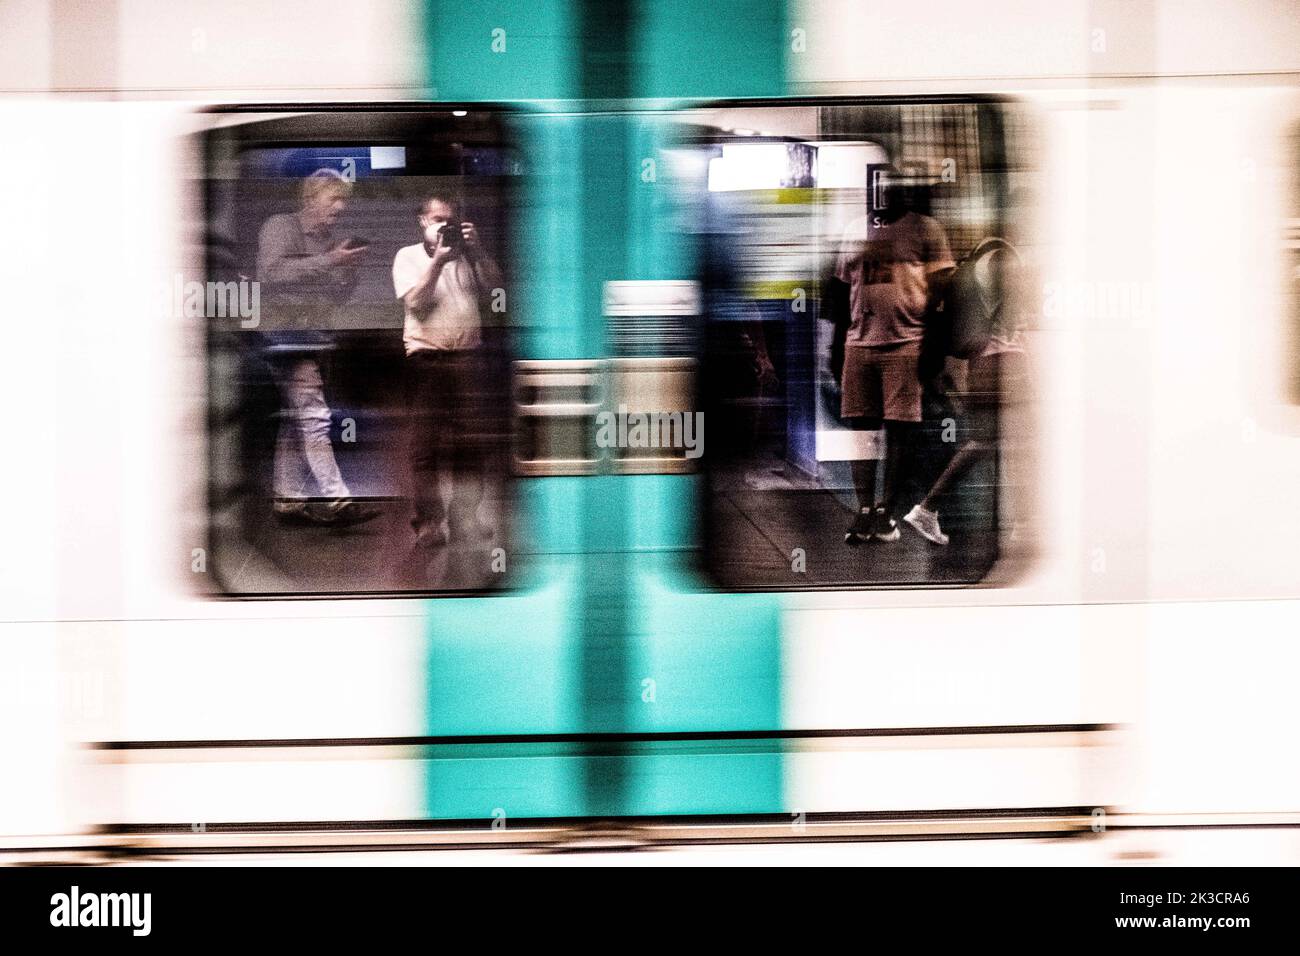 Illustrazioni della metropolitana, RER. I treni vengono ridecorati a Parigi, in Francia, il 2022 agosto. Foto di Pierrick Villette/ABACAPRESS.COM Foto Stock